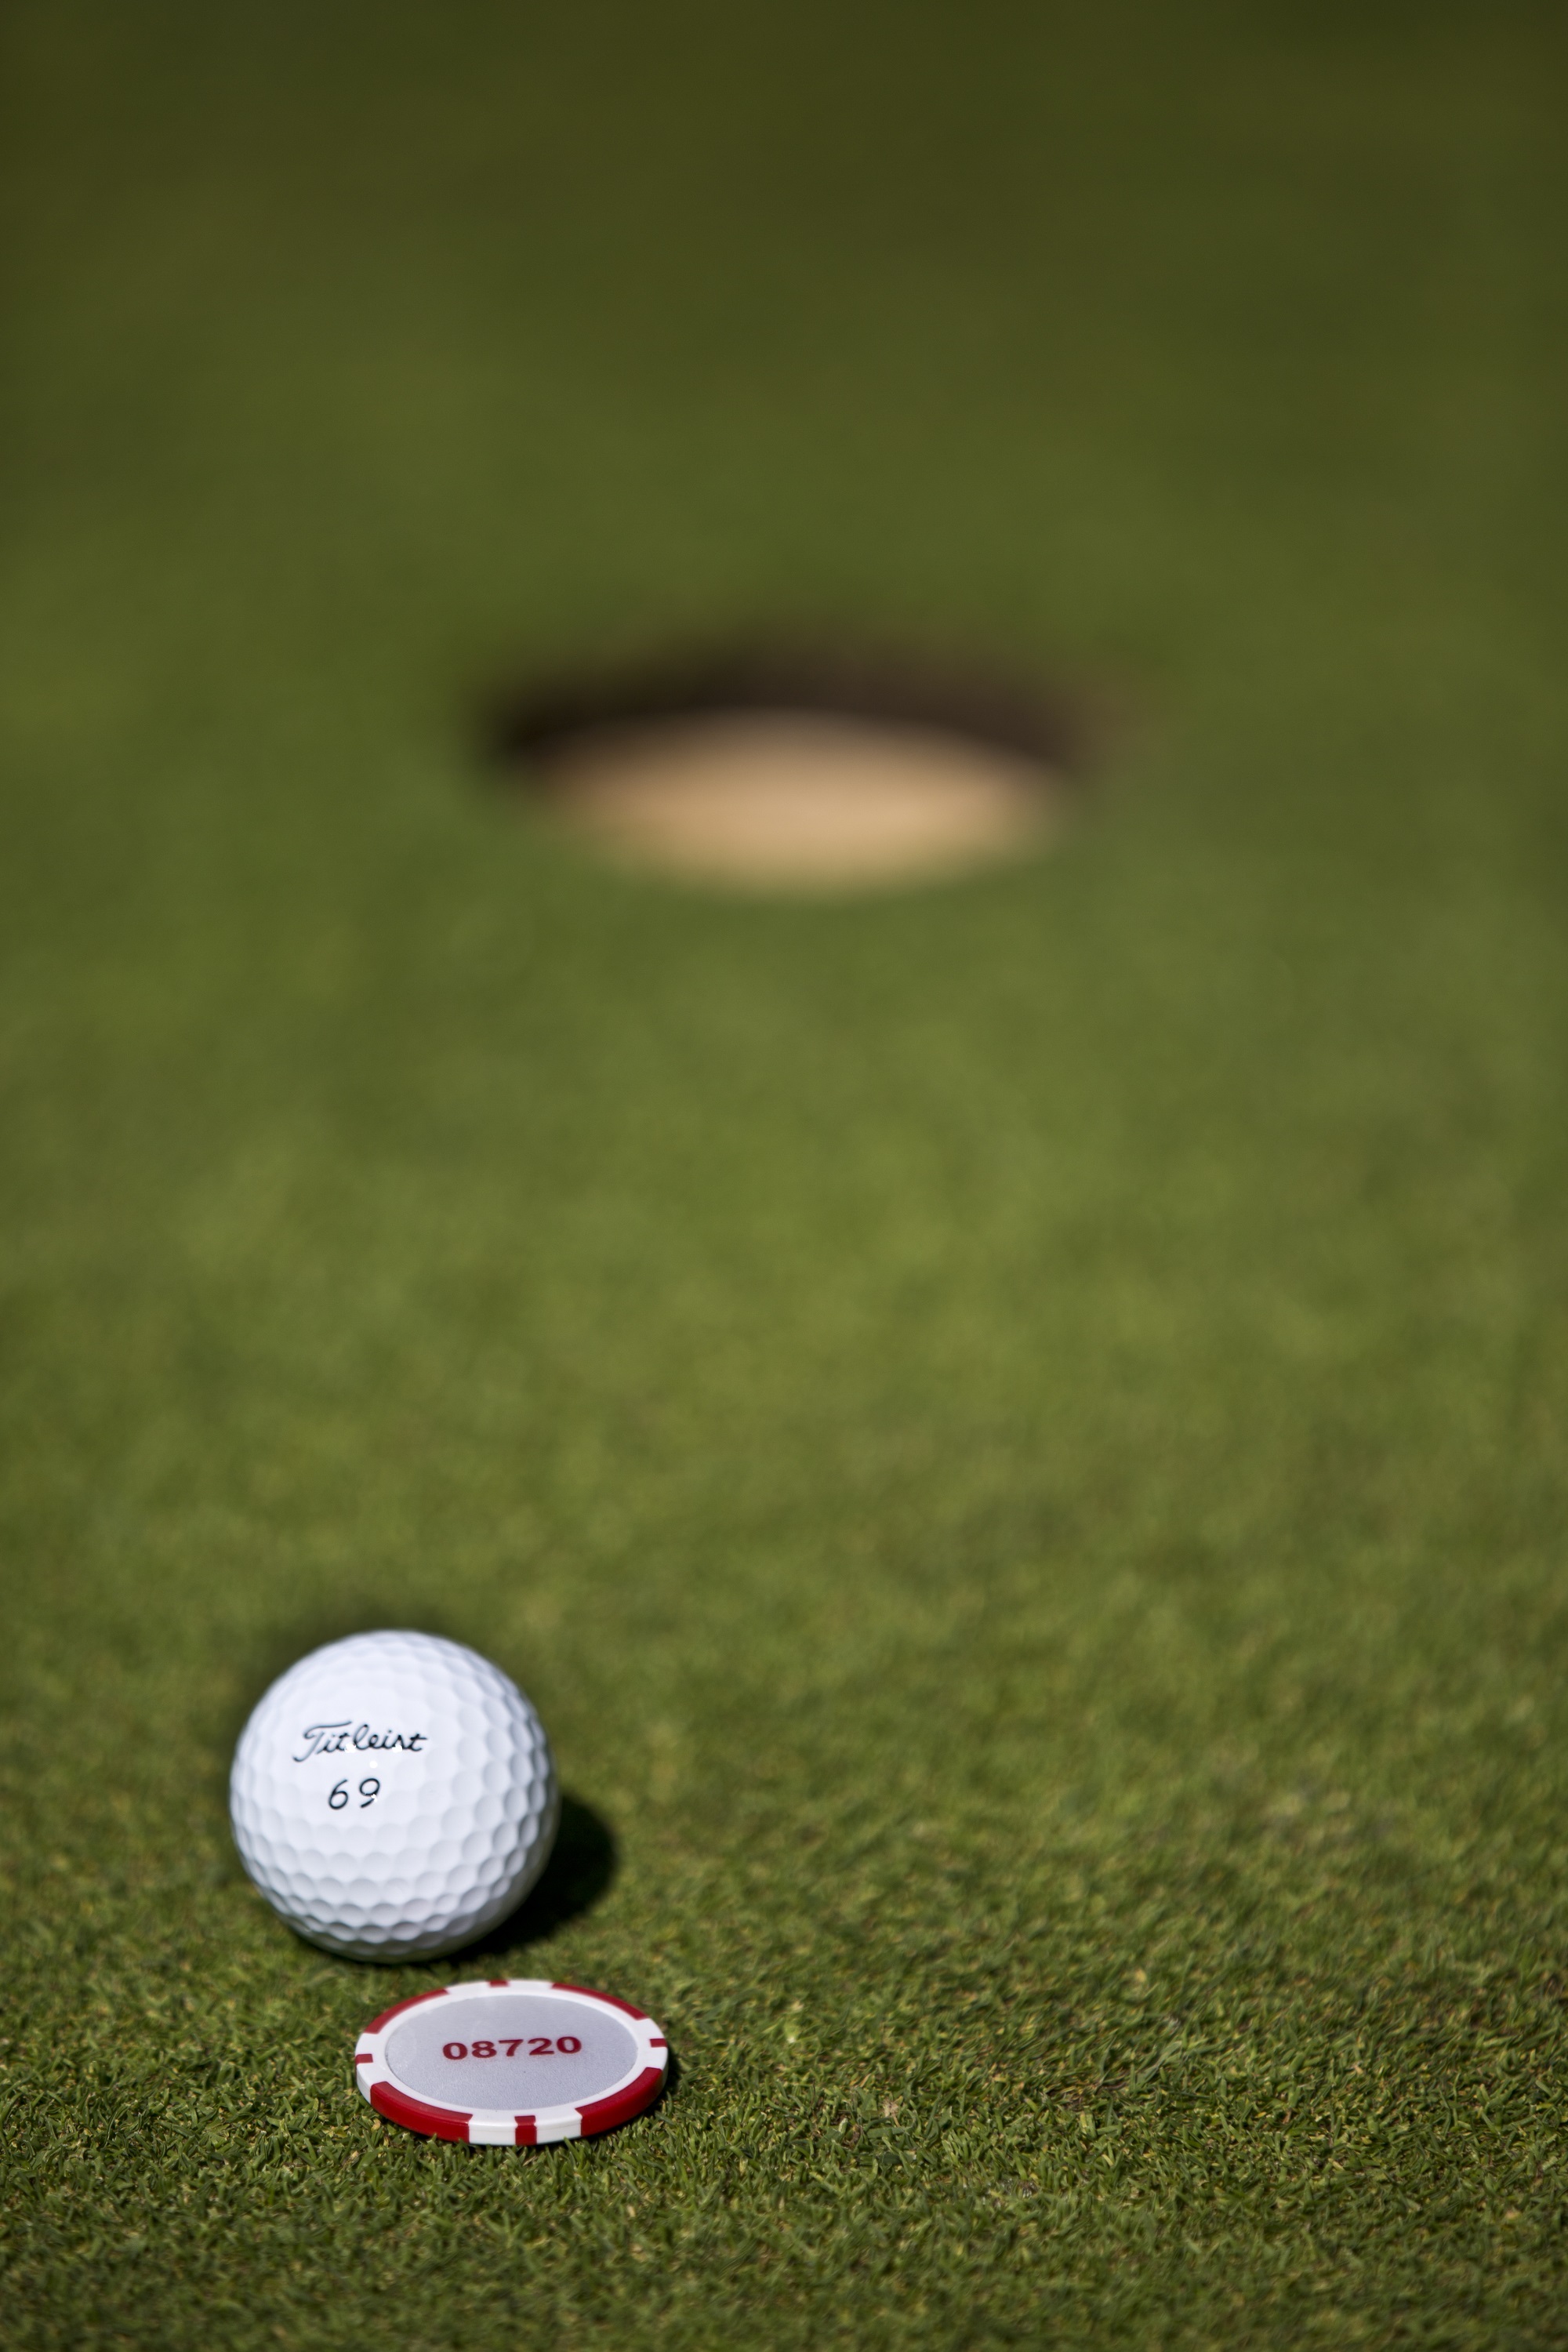 Titleist golf ball fan wins trip of a lifetime